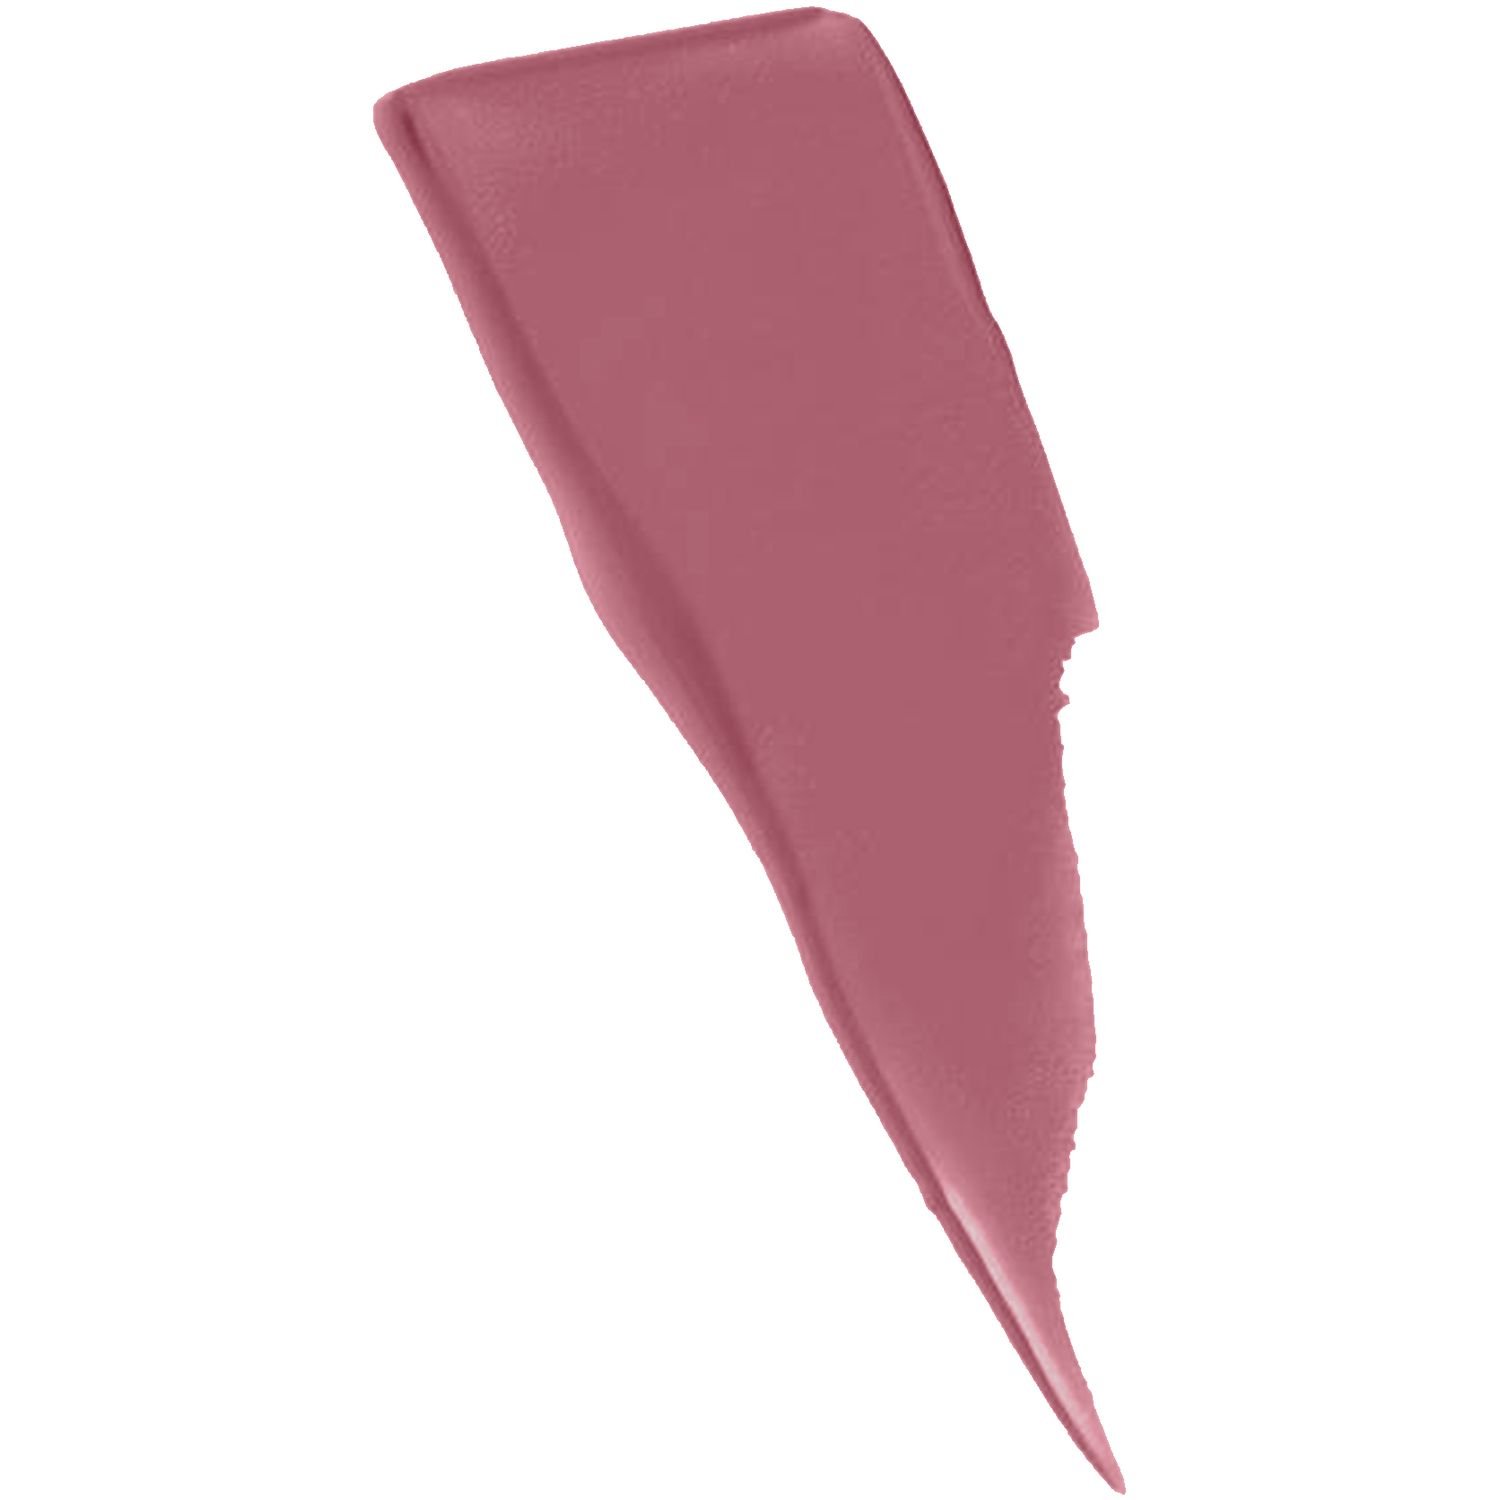 Рідка помада для губ Maybelline New York Super Stay Matte Ink, відтінок 15 (Рожевий), 5 мл (B2983900) - фото 2